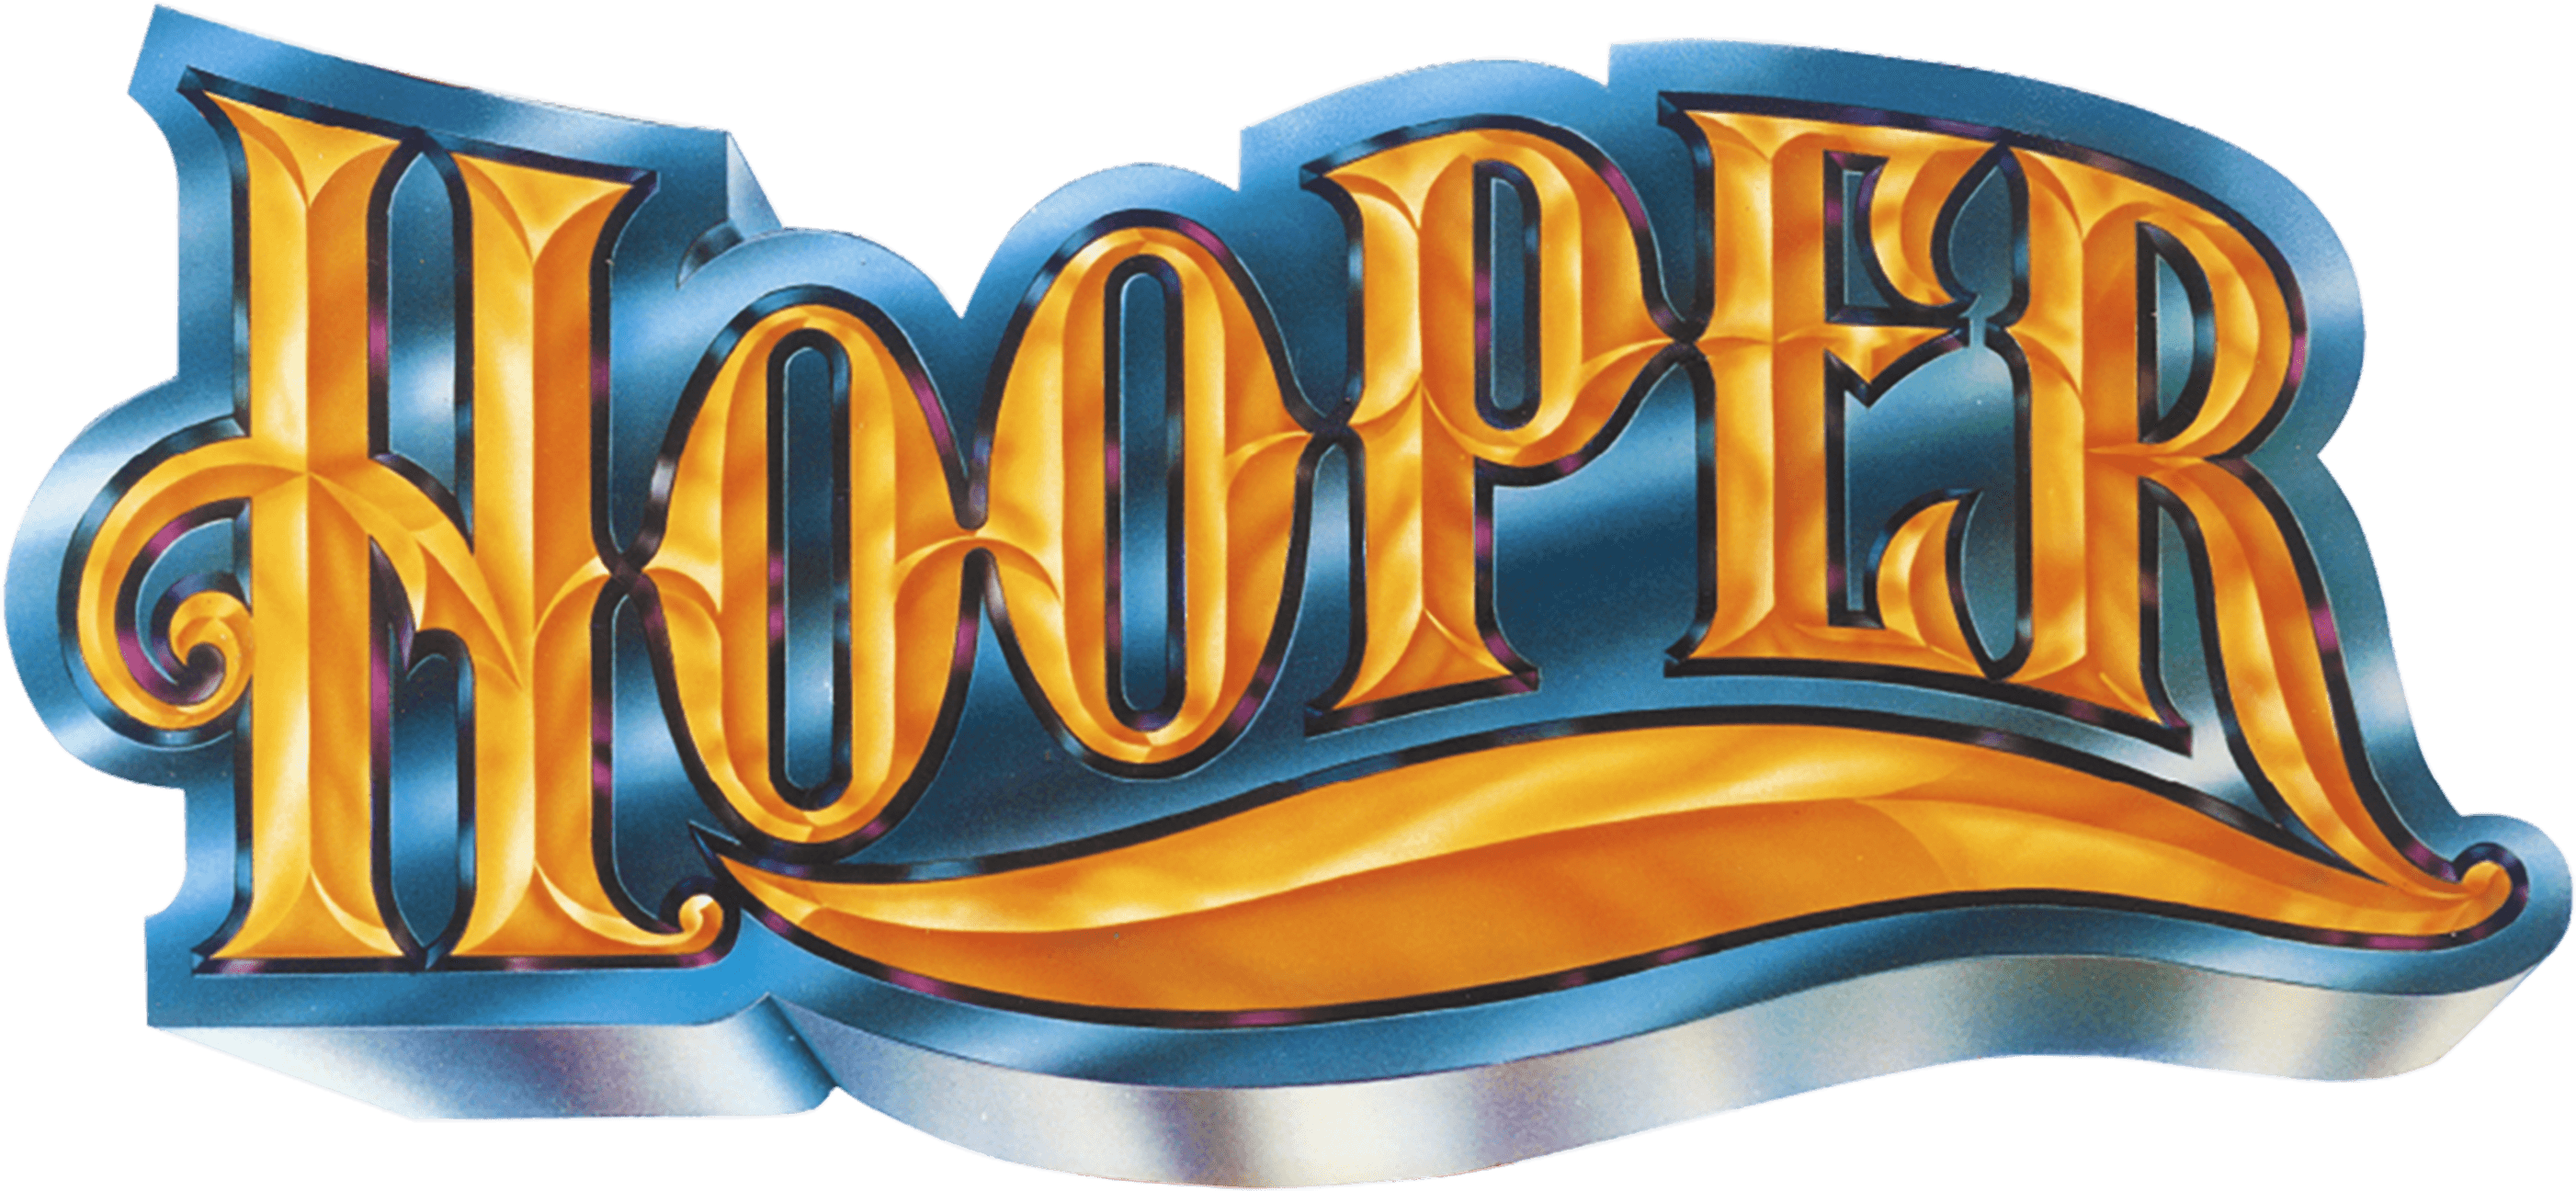 Hooper logo